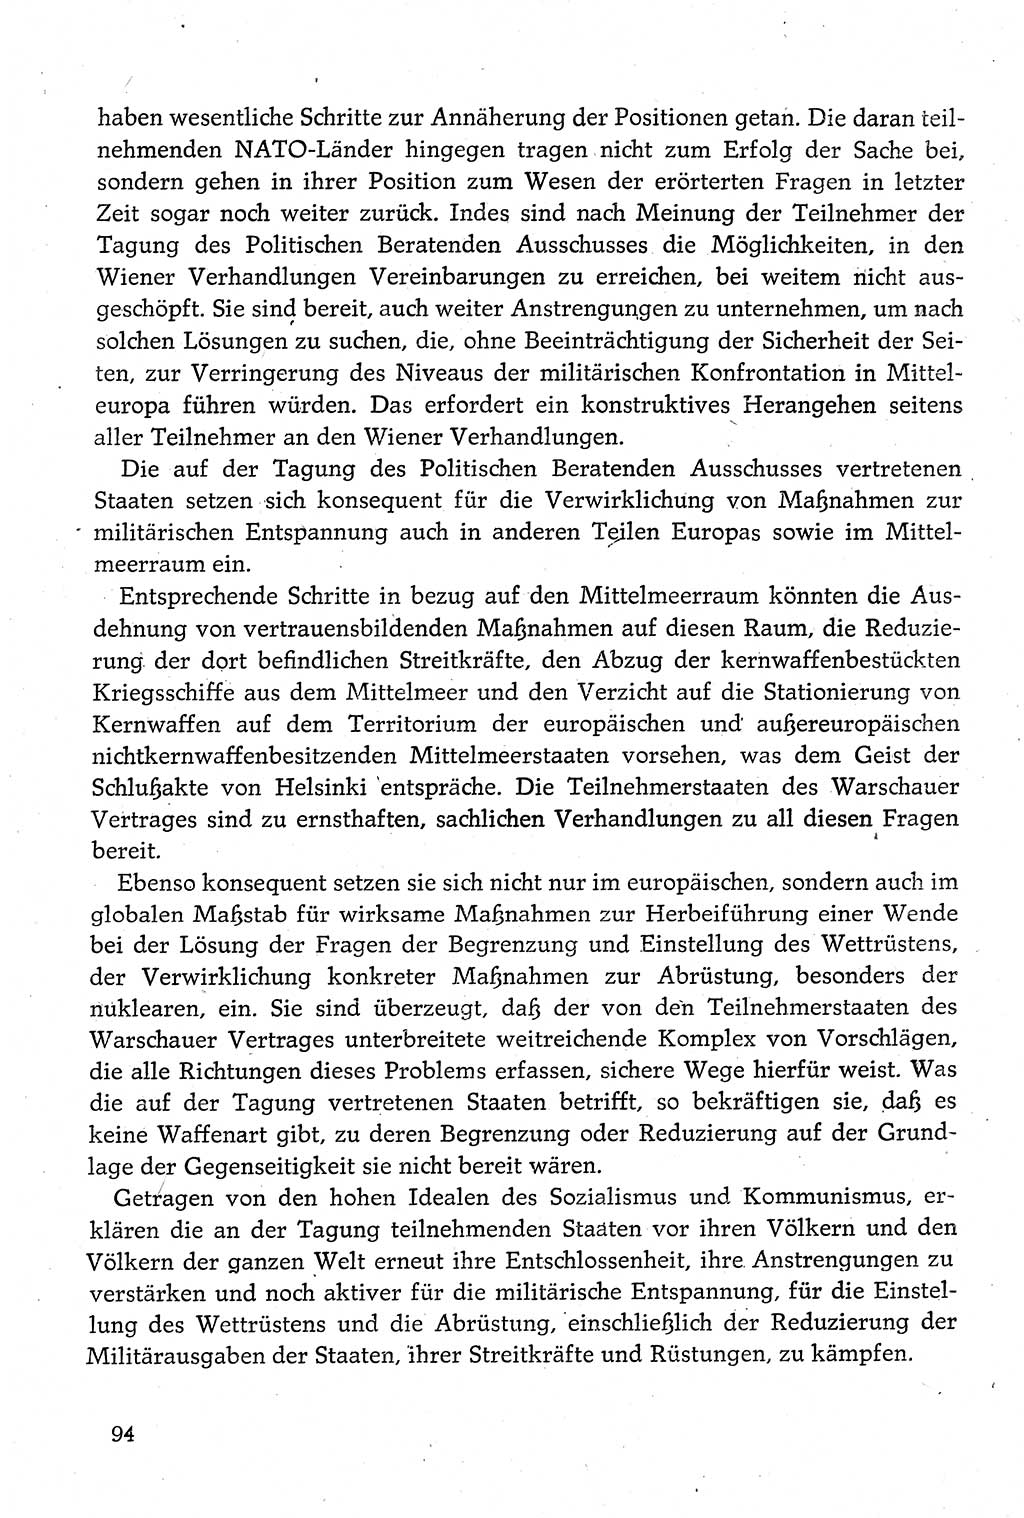 Dokumente der Sozialistischen Einheitspartei Deutschlands (SED) [Deutsche Demokratische Republik (DDR)] 1980-1981, Seite 94 (Dok. SED DDR 1980-1981, S. 94)